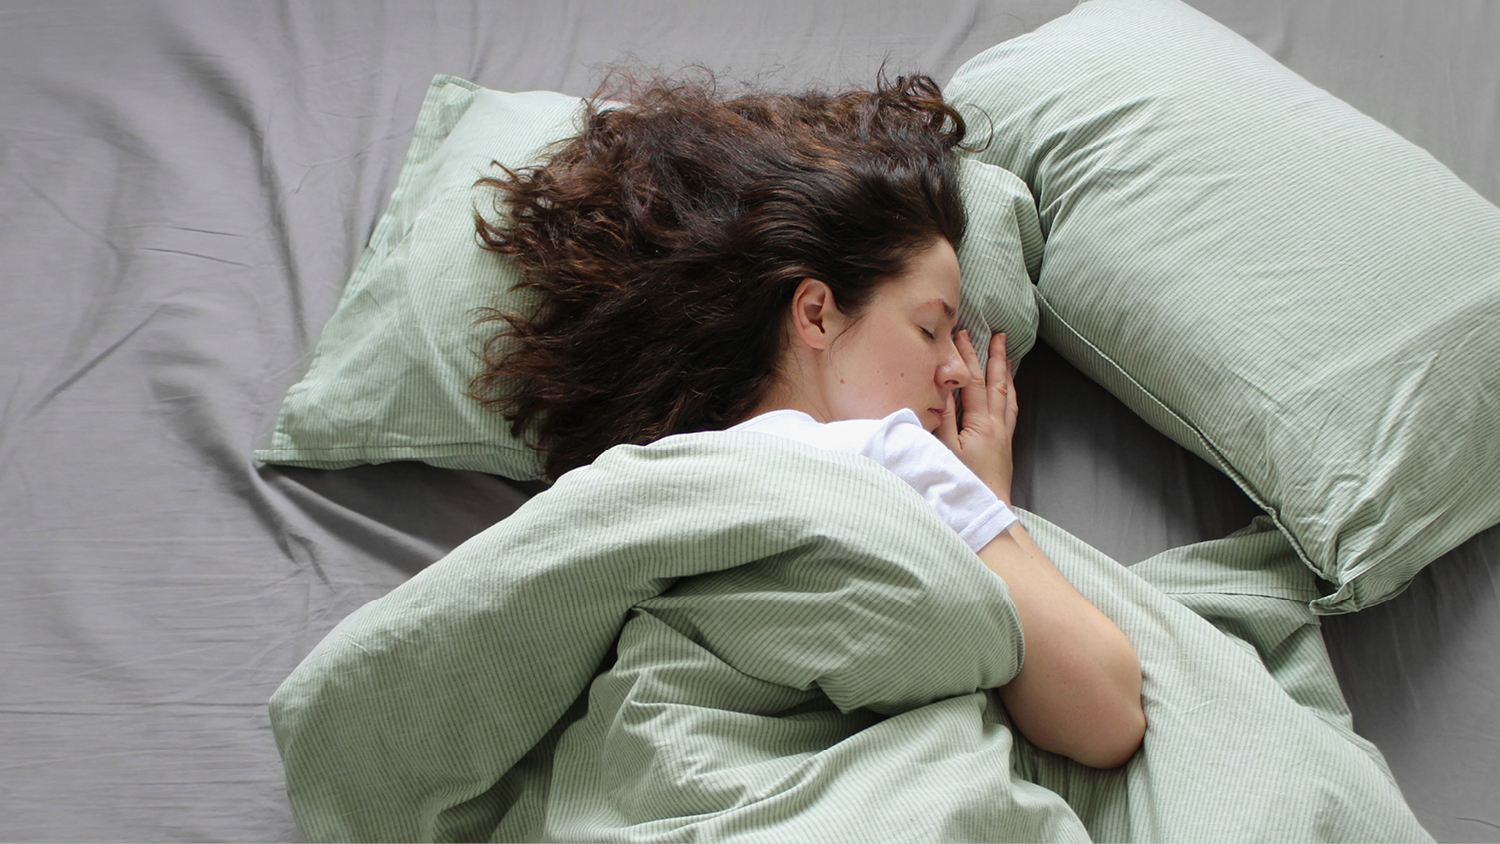 Qué almohada es mejor para dormir?